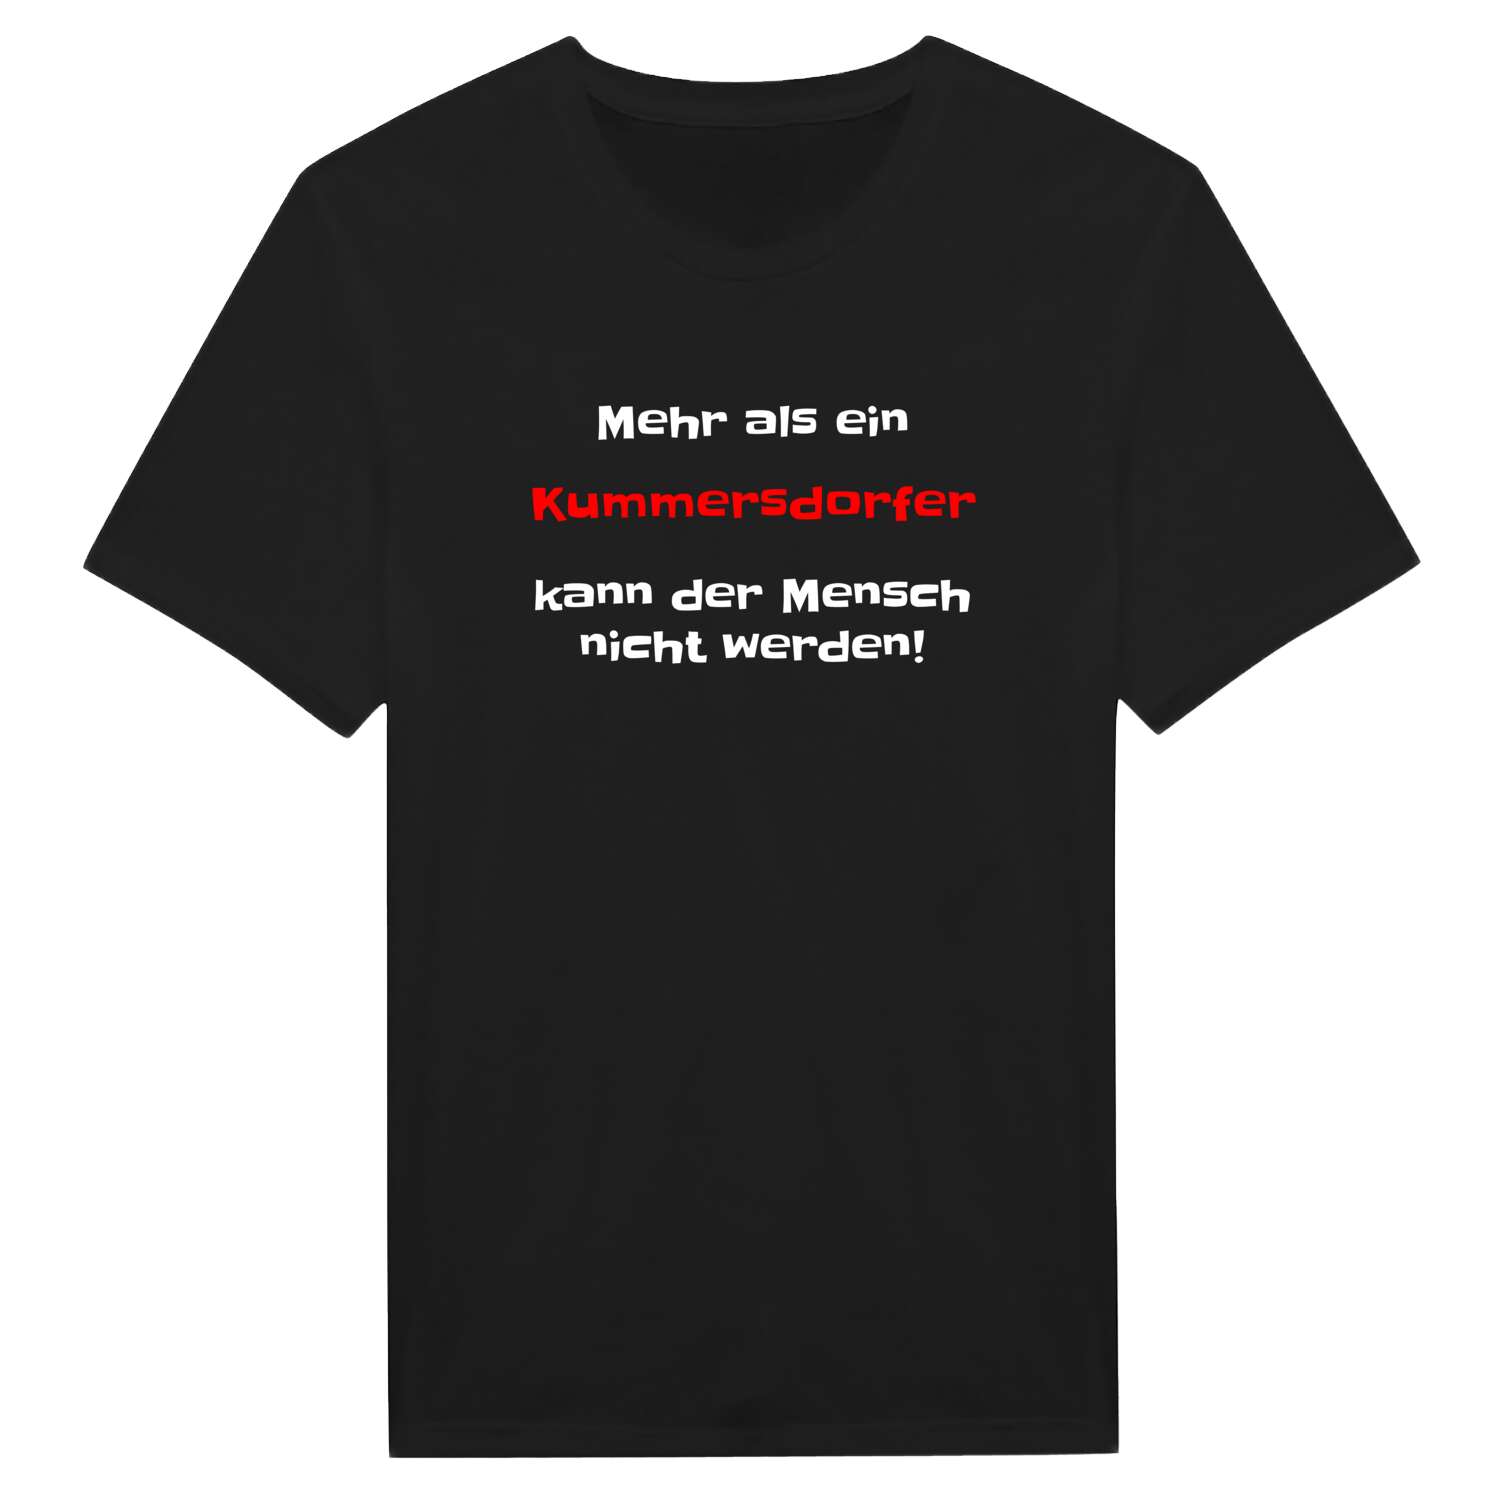 Kummersdorf T-Shirt »Mehr als ein«